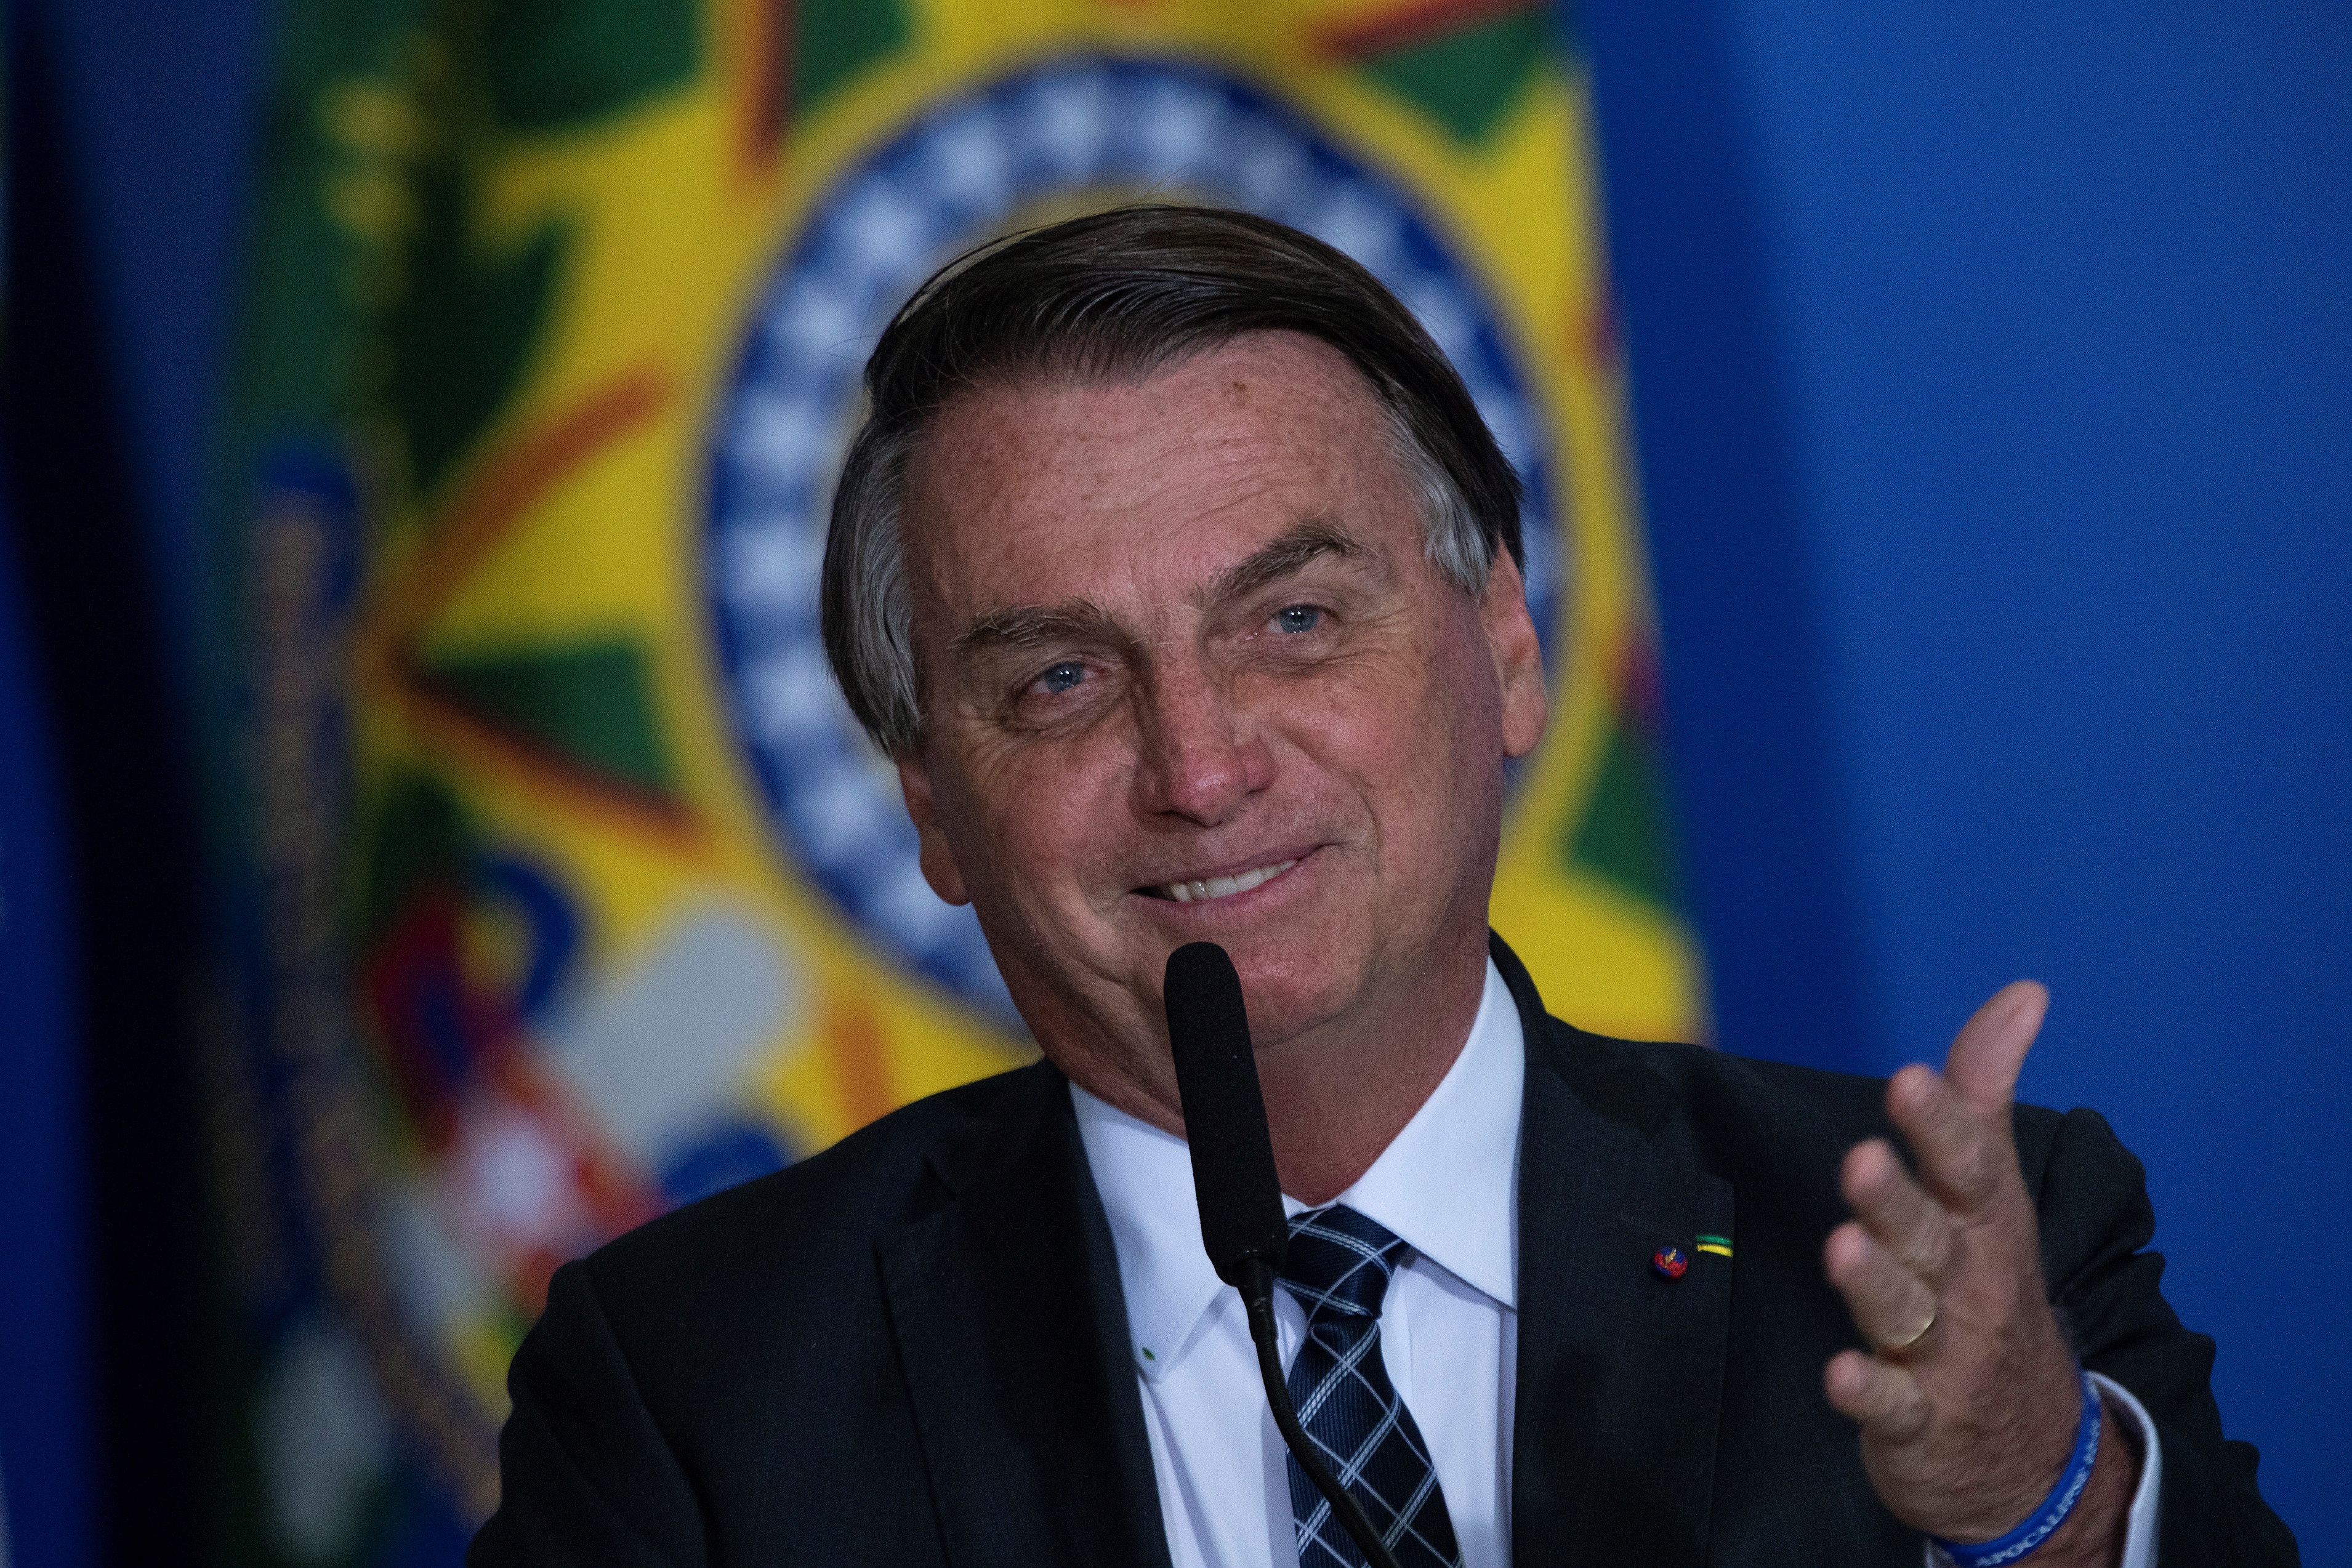 El presidente de Brasil, Jair Bolsonaro, apostó que la selección de su país le ganará 5-0 a Argentina en la final de la Copa América. Foto Prensa Libre:  EFE.